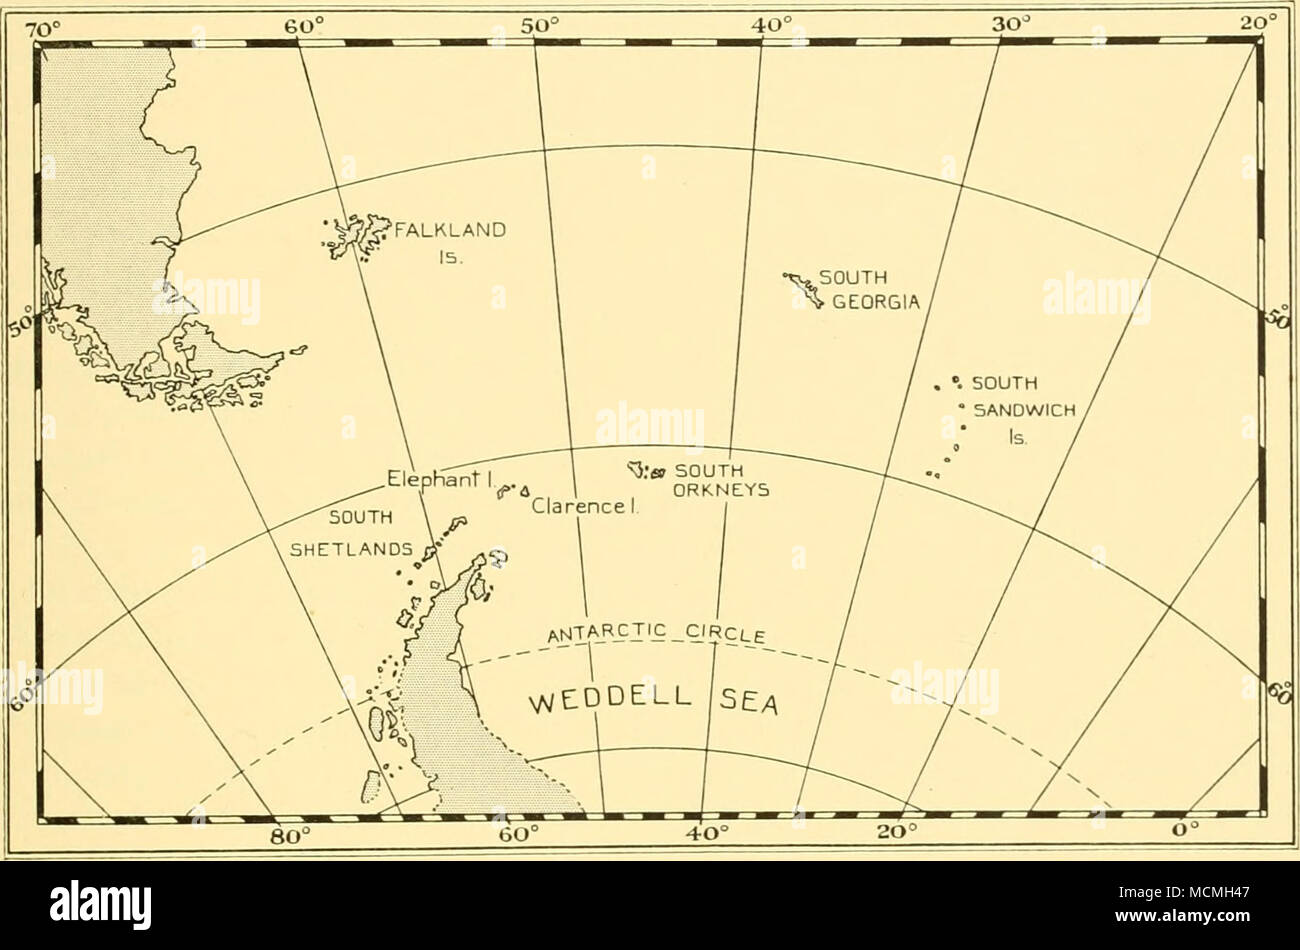 . Fig. 10. Les îles Falkland et leurs dépendances. beaucoup moins. L'Île du couronnement, la plus grande du groupe, même à son sens le point étant à peine à 13 kilomètres de diamètre. À l'exception de Signy toutes les grandes îles sont abondamment couvertes de glace, et dans ce cas comme dans d'autres égards, le groupe pourrait peut-être envisager d'être plus vraiment en Antarctique de caractère que les Shetland du Sud qui se trouvent beaucoup plus loin au sud. Situé à proximité de la mer de Weddell, le Sud Orcades participent chaque année dans le grand gel de l'hiver de l'océan Antarctique et en conséquence ne sont accessibles Banque D'Images